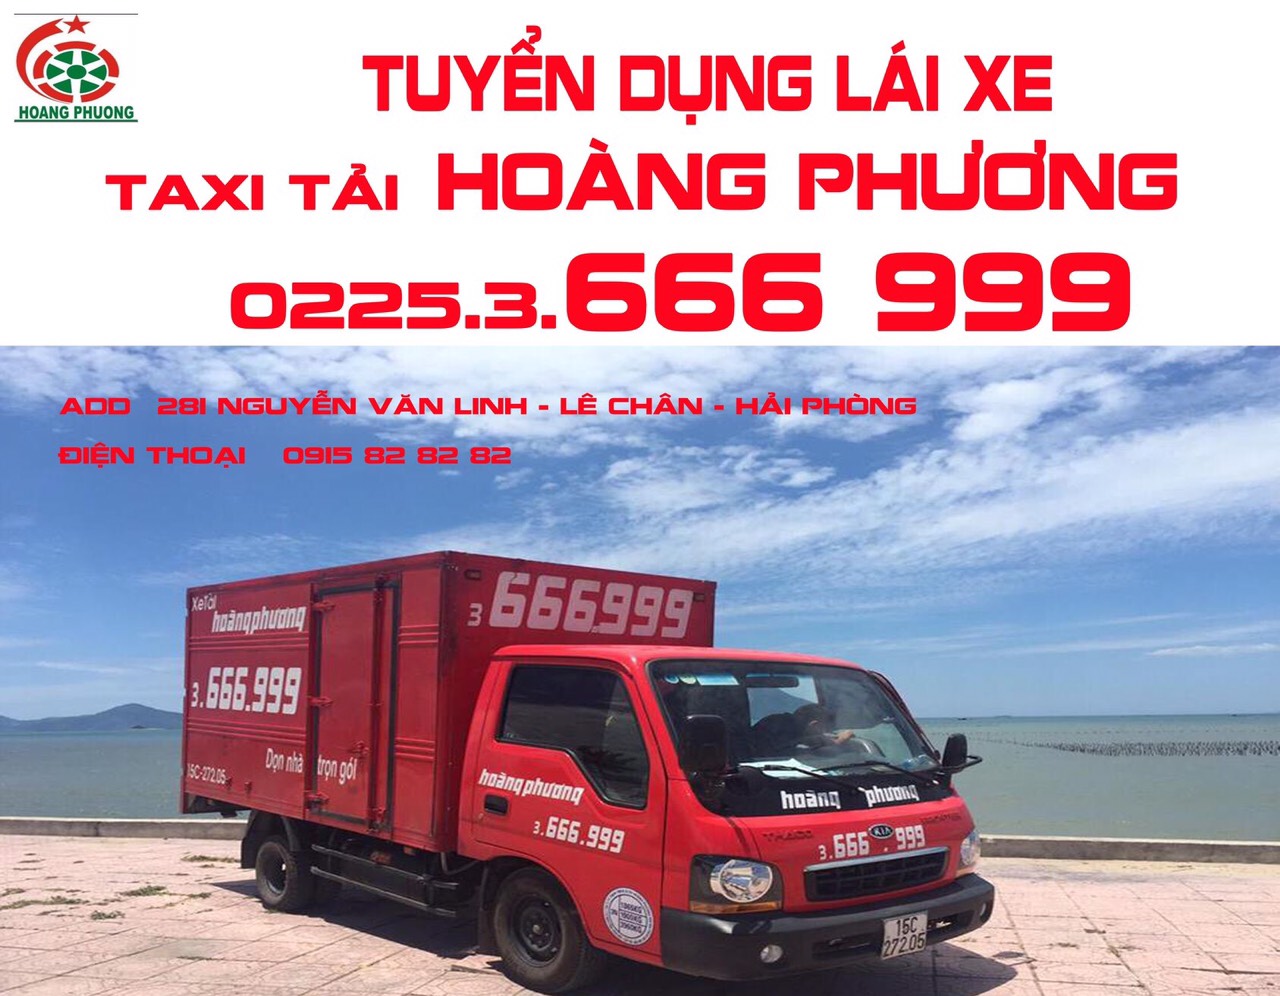 Taxi tải Hải Phòng Hoa Vinh Nhanh chóng An toàn Giá rẻ